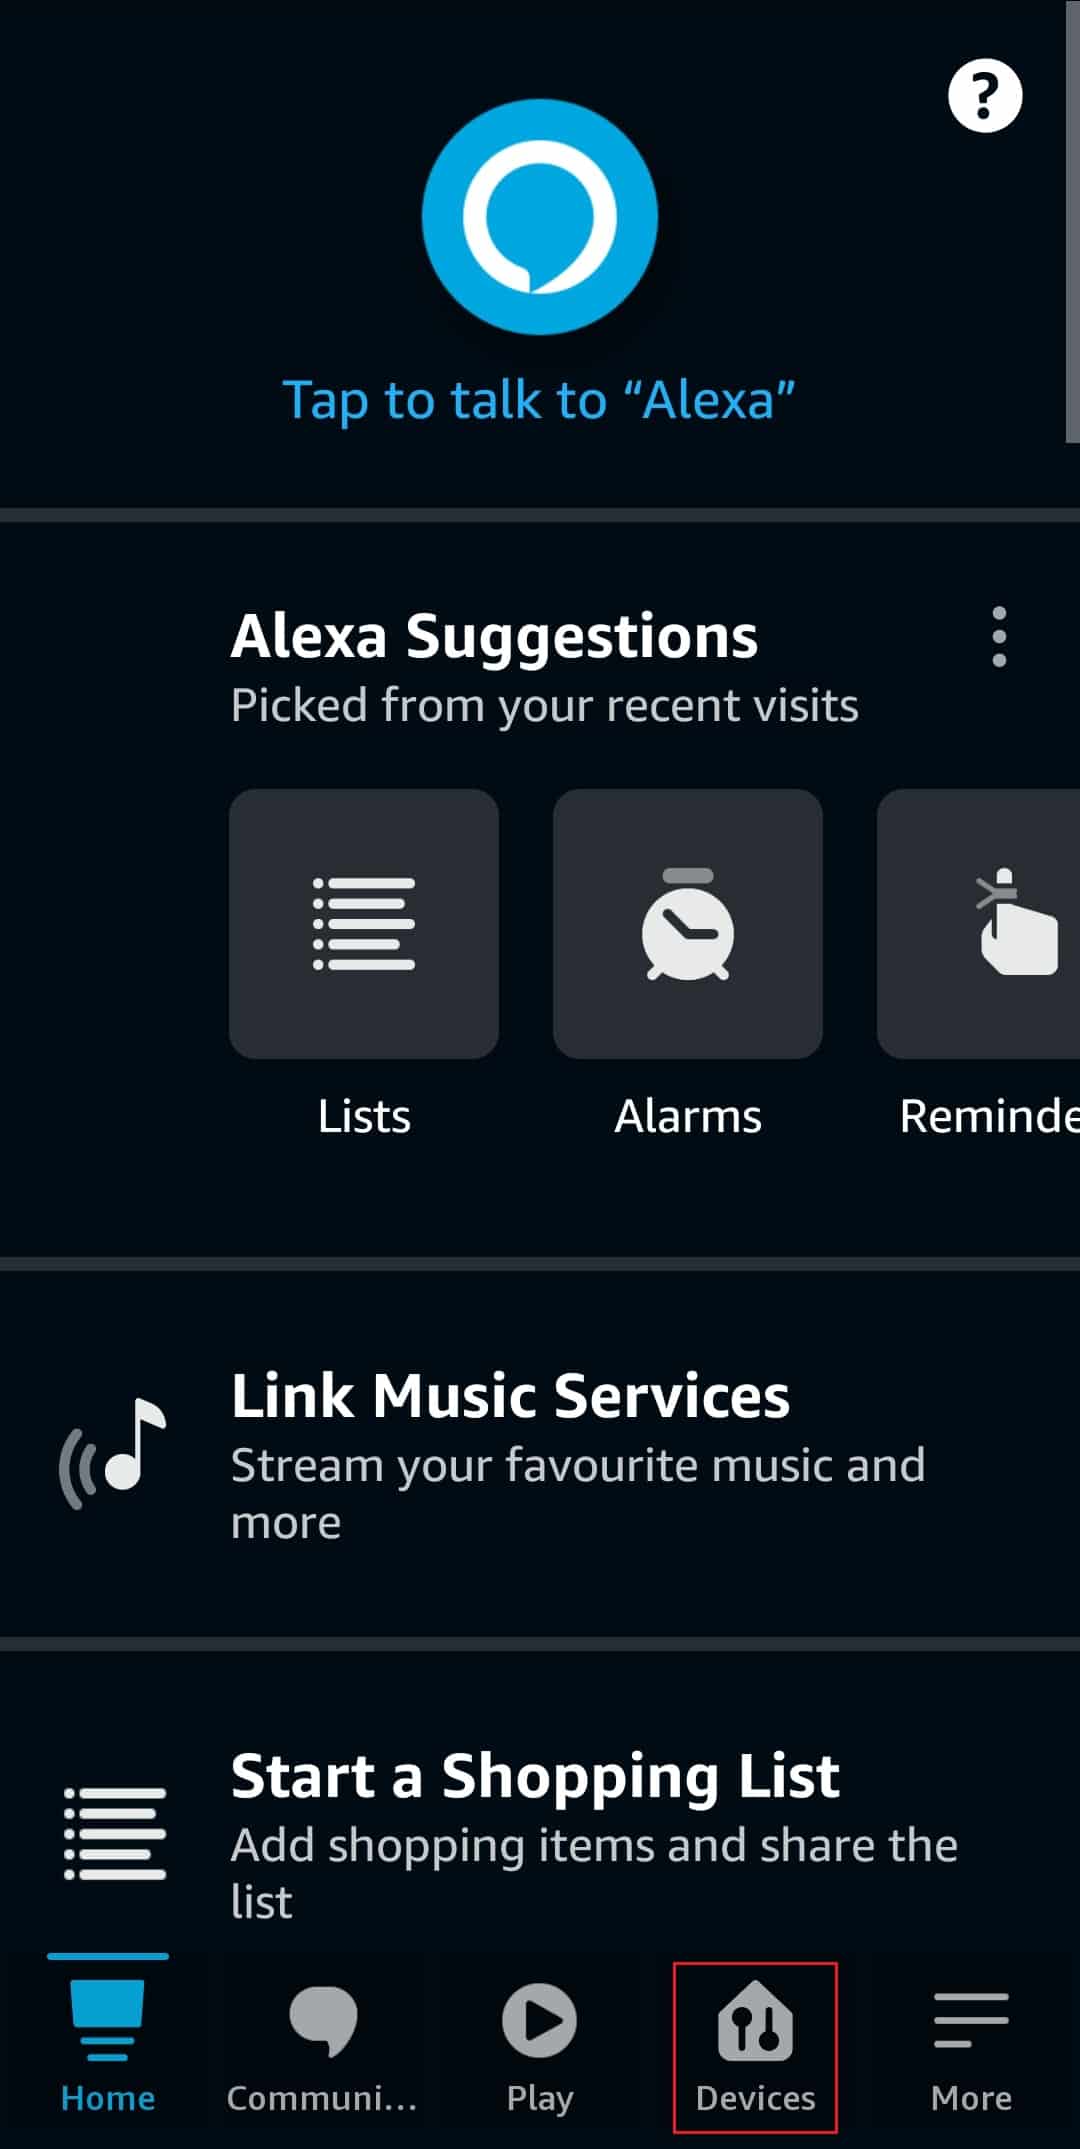 нажмите «Устройства» в приложении Amazon Alexa.